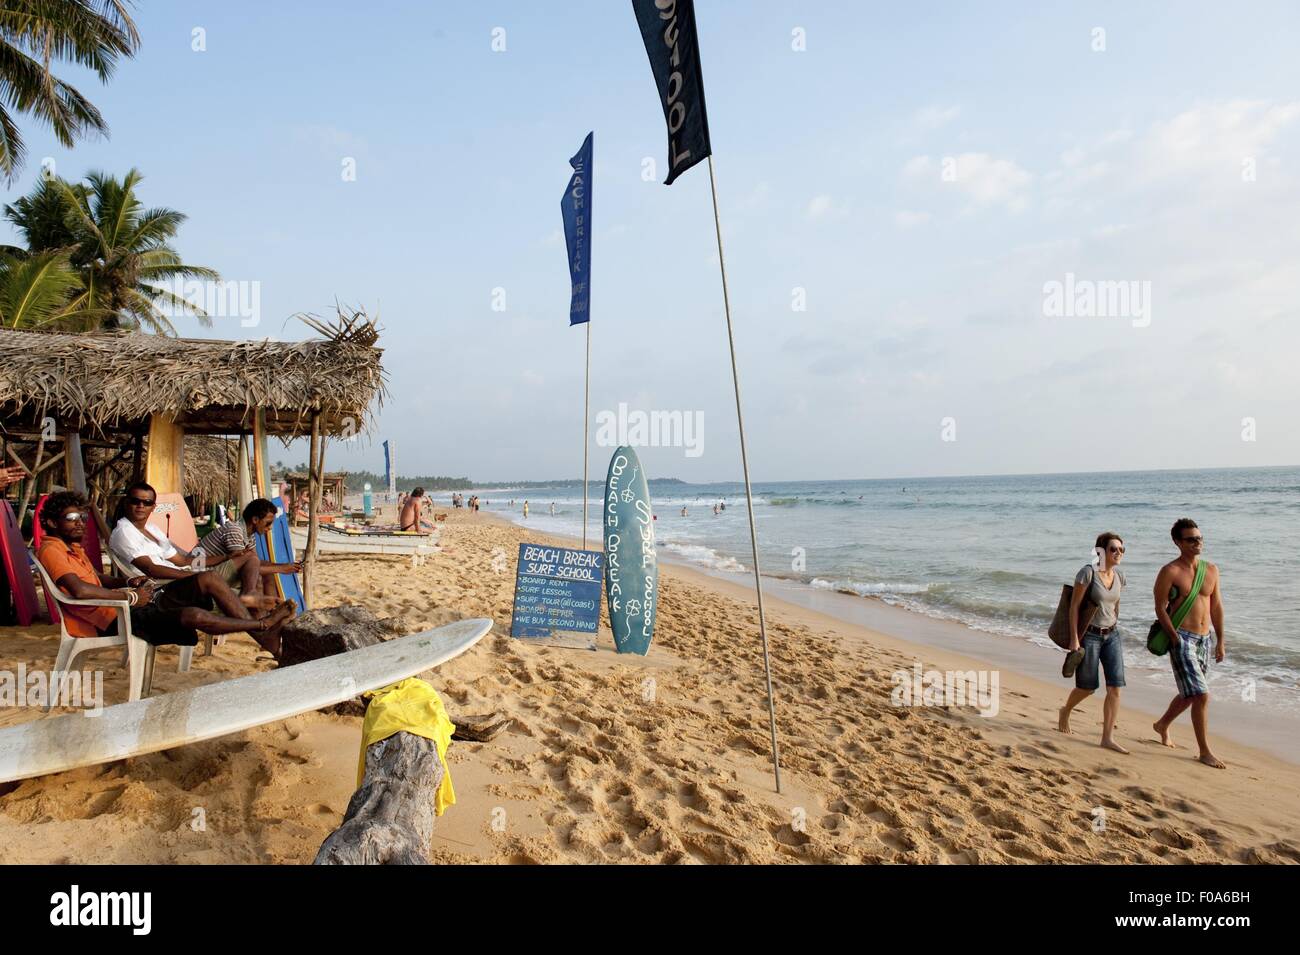 People at Hikkaduwa beach, Sri Lanka Stock Photo